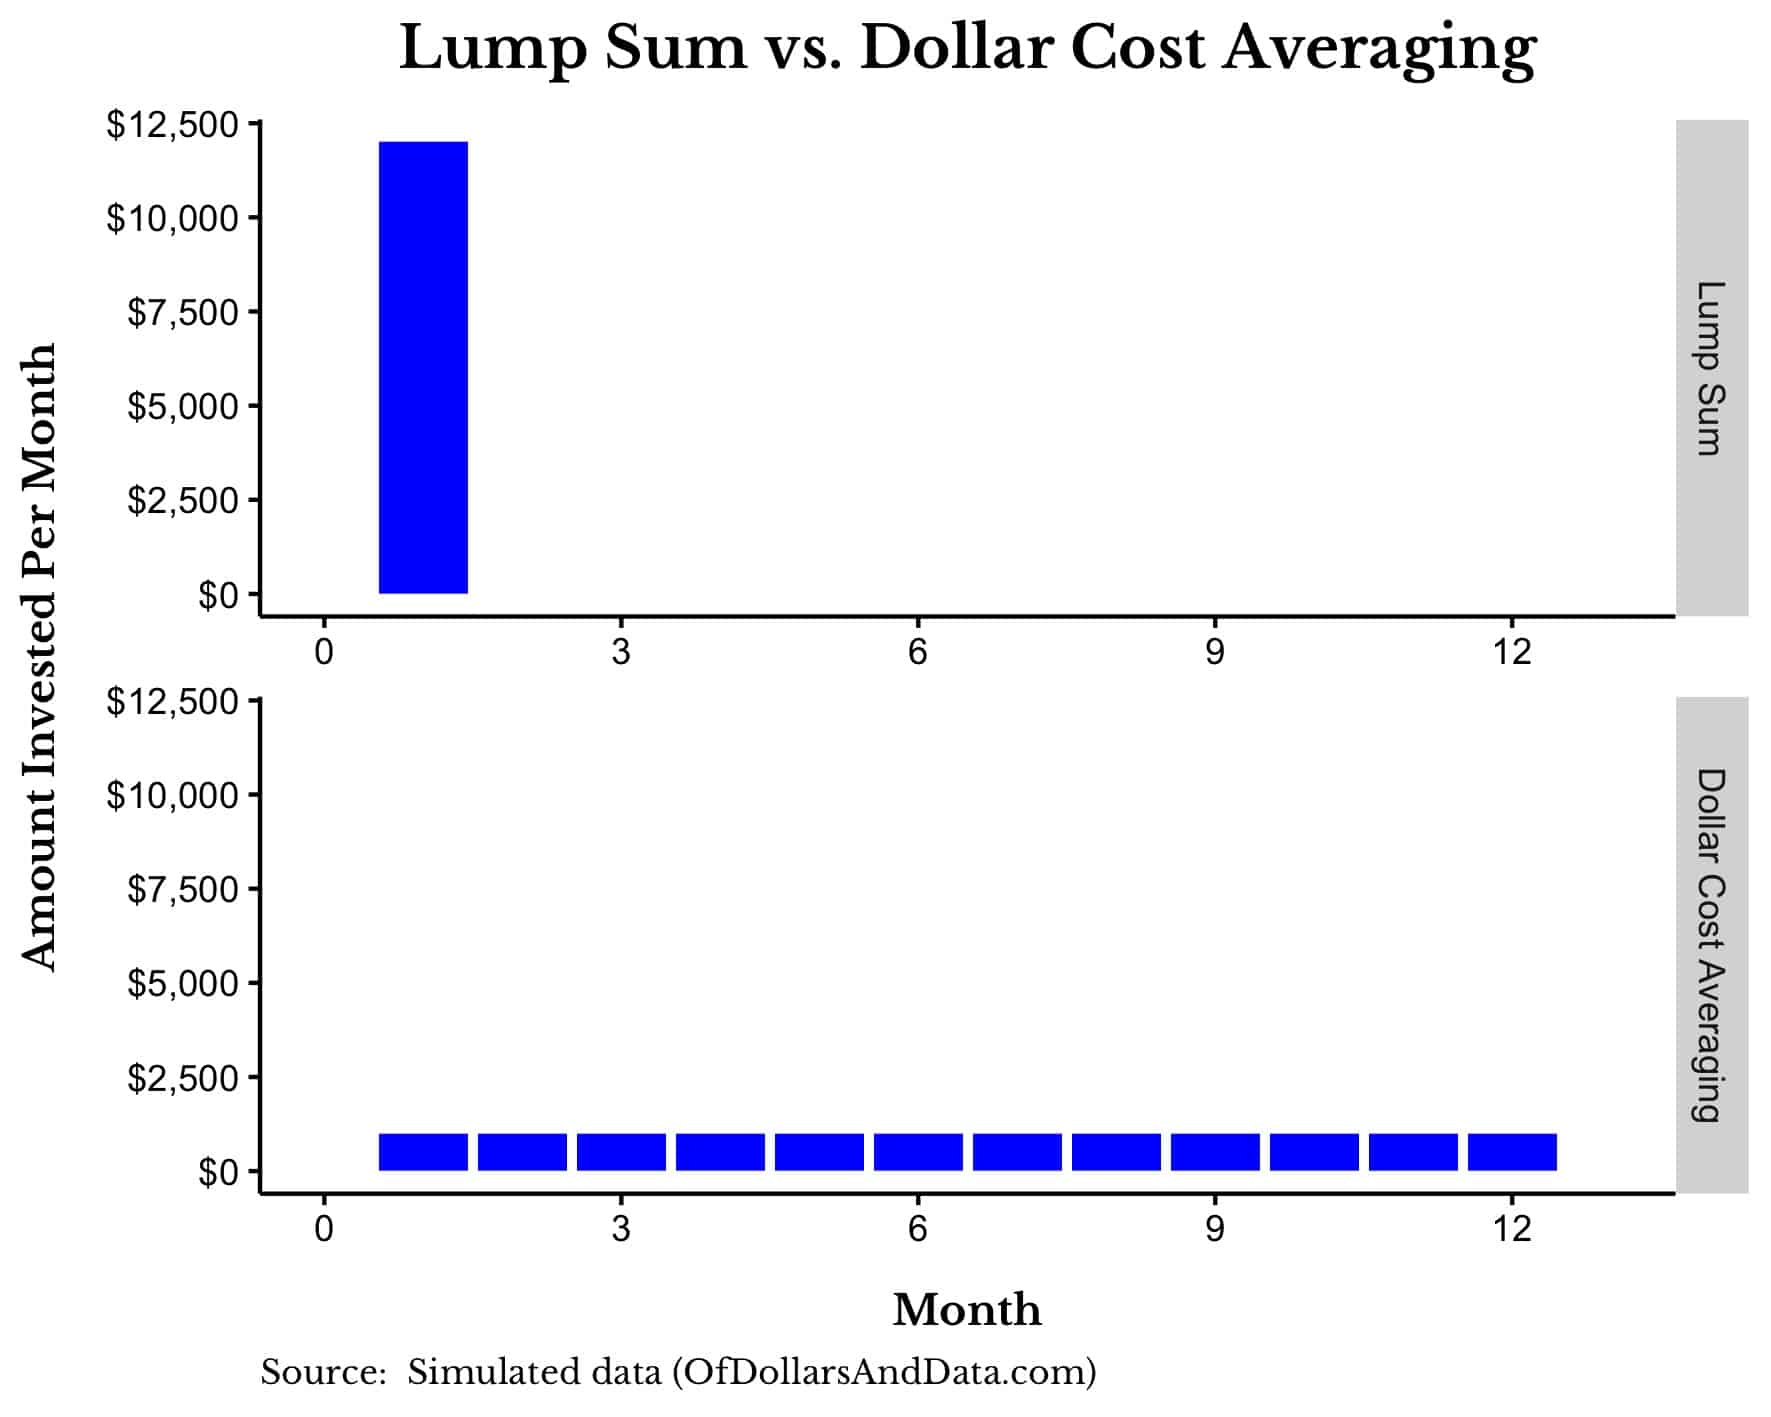 dollar cost average or lump sum investing